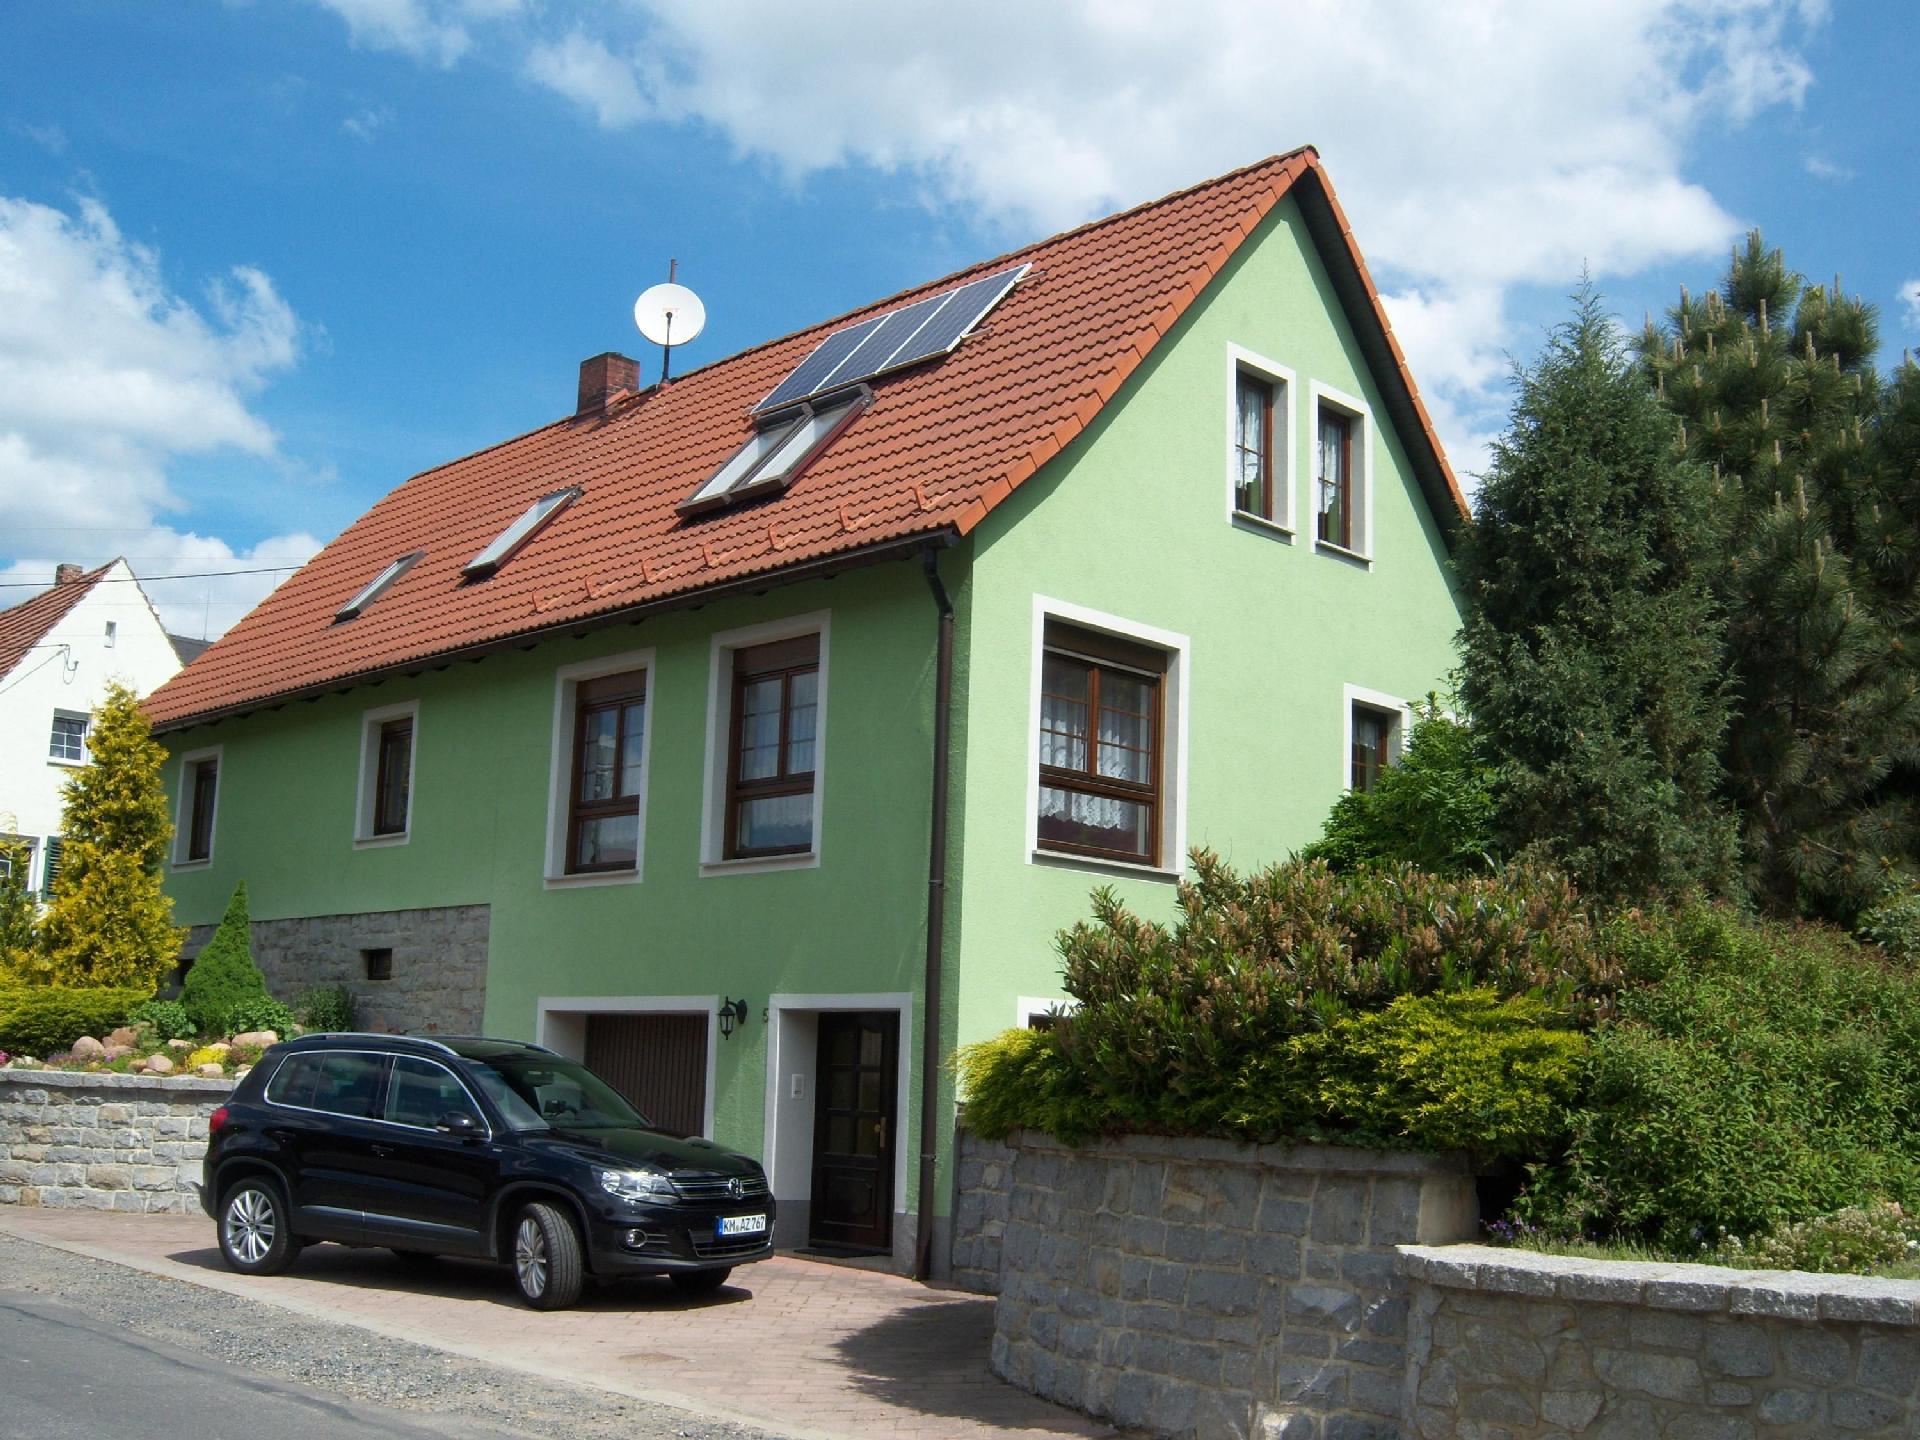 Geräumige Ferienwohnung mit Terrasse, in g&uu Ferienhaus in Deutschland